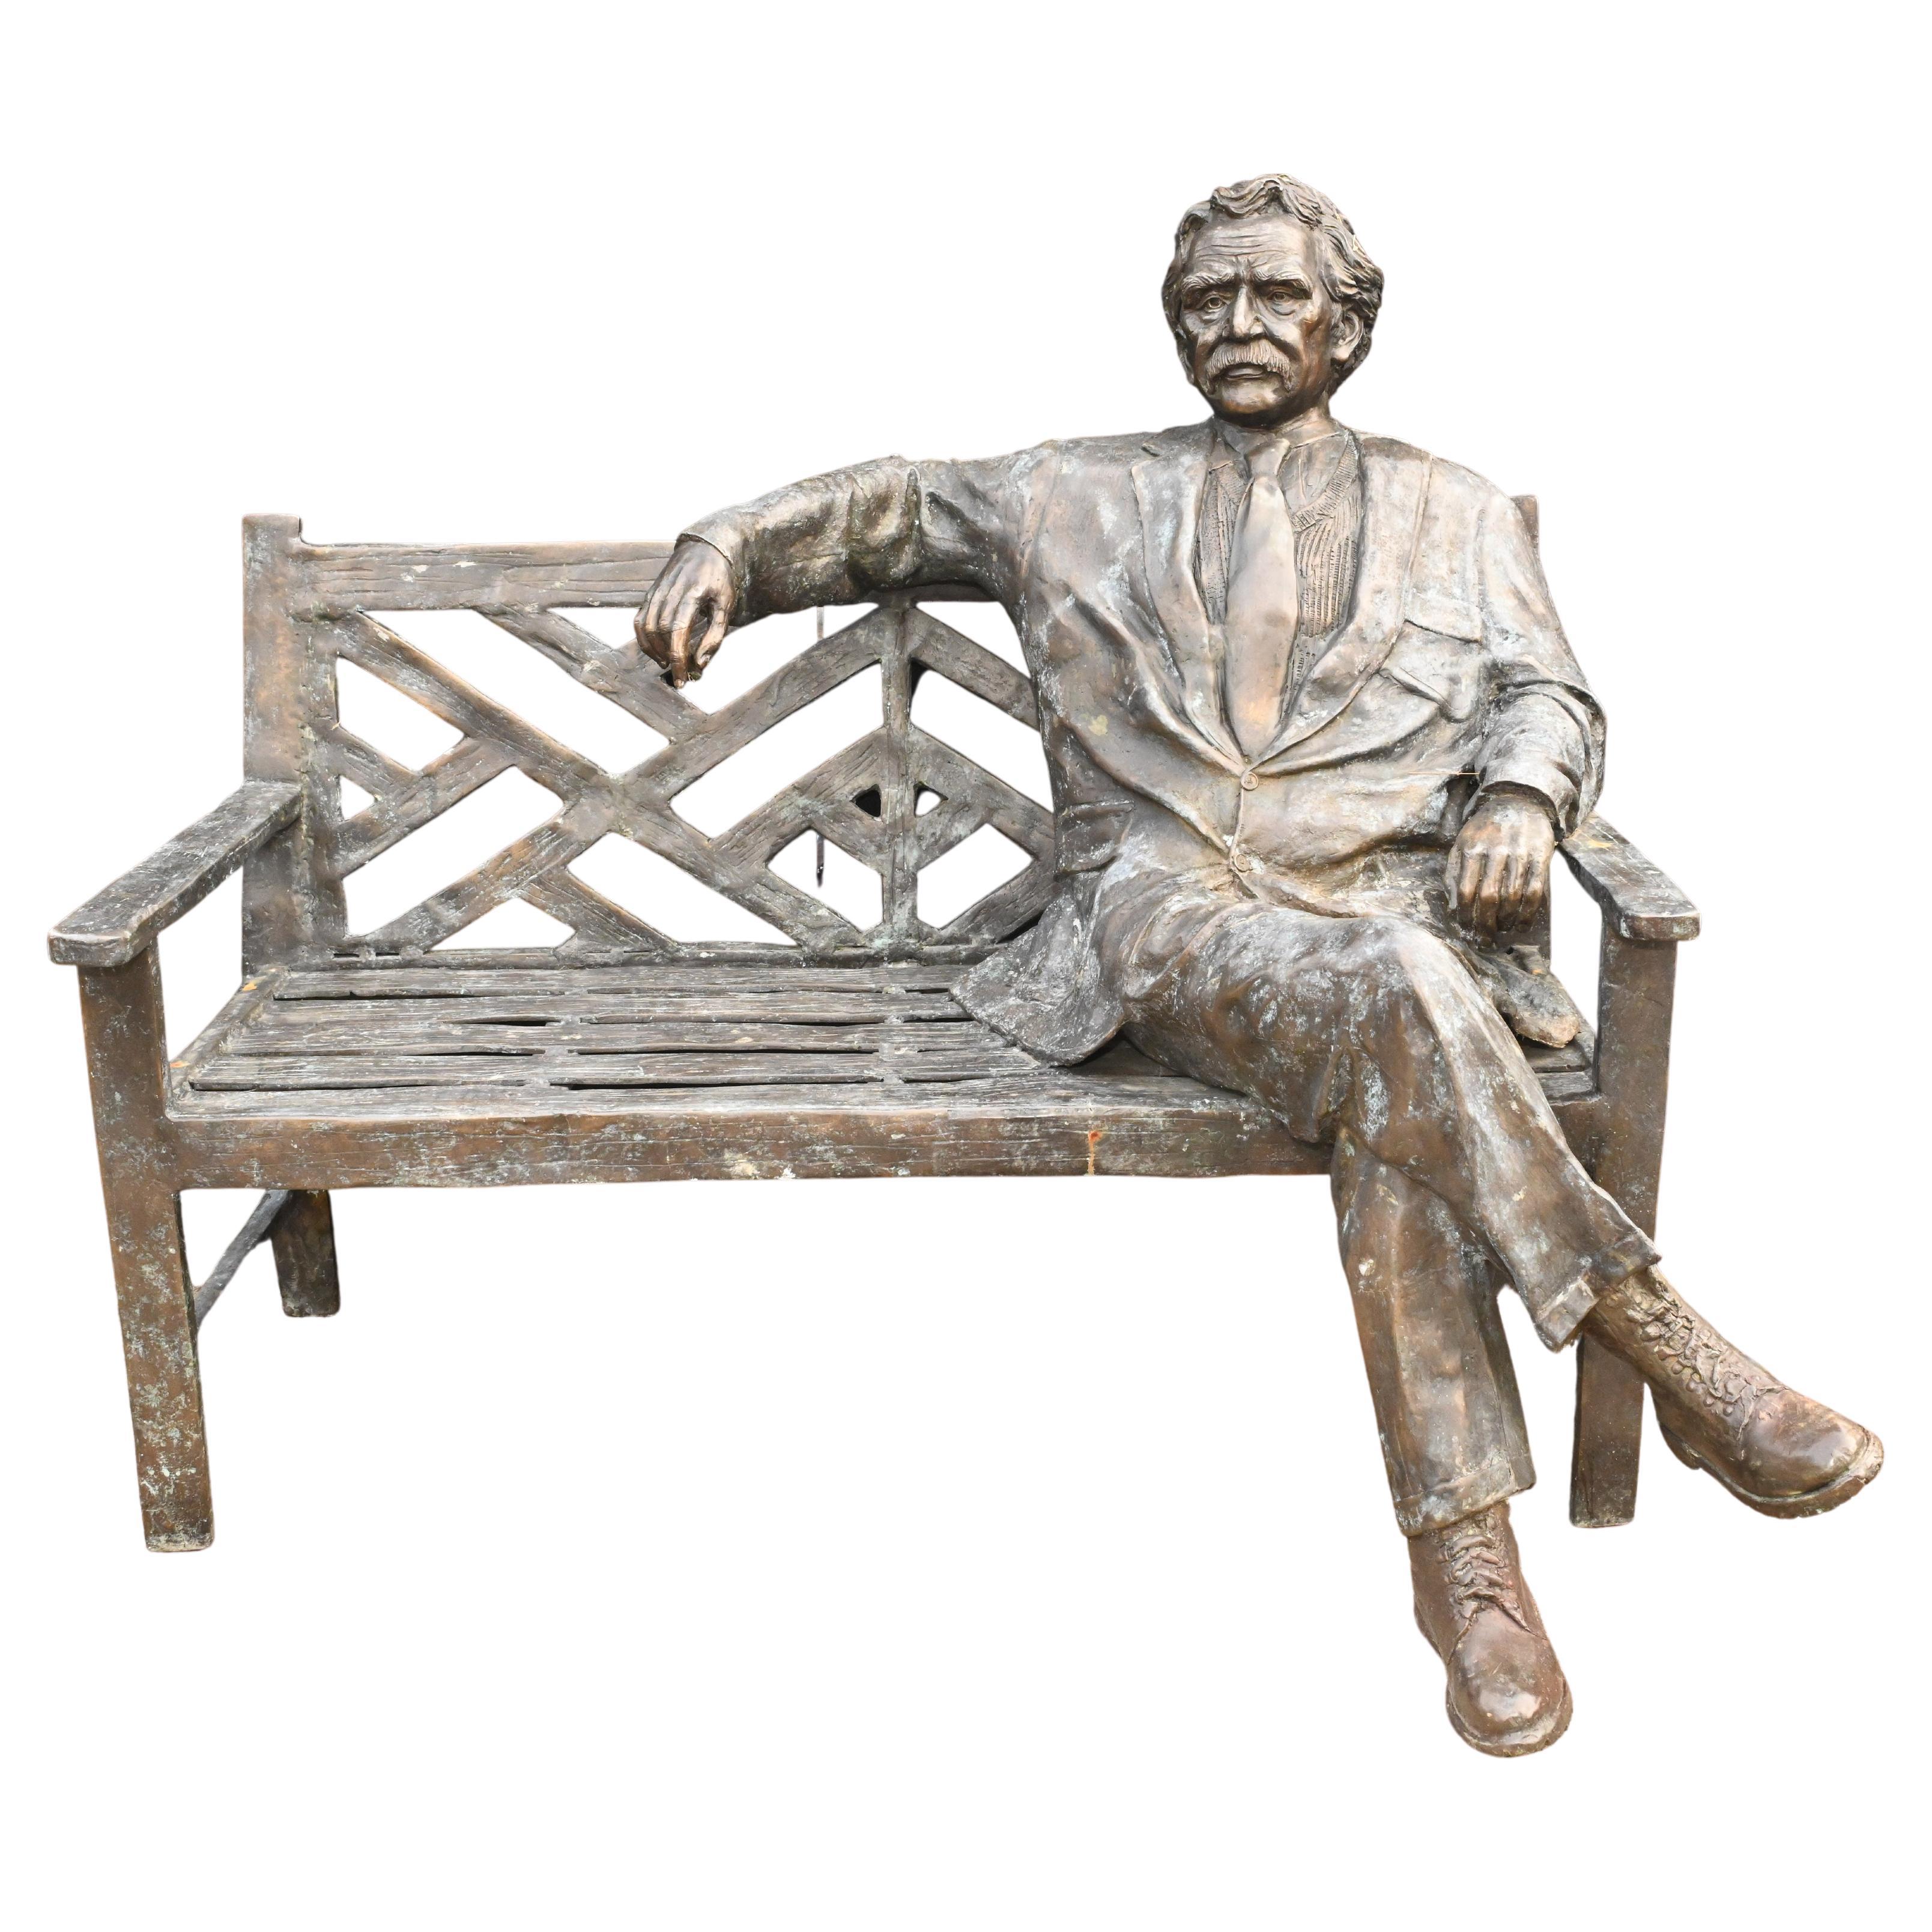 Large Bronze Garden Bench with Lifesize Albert Einstein Statue